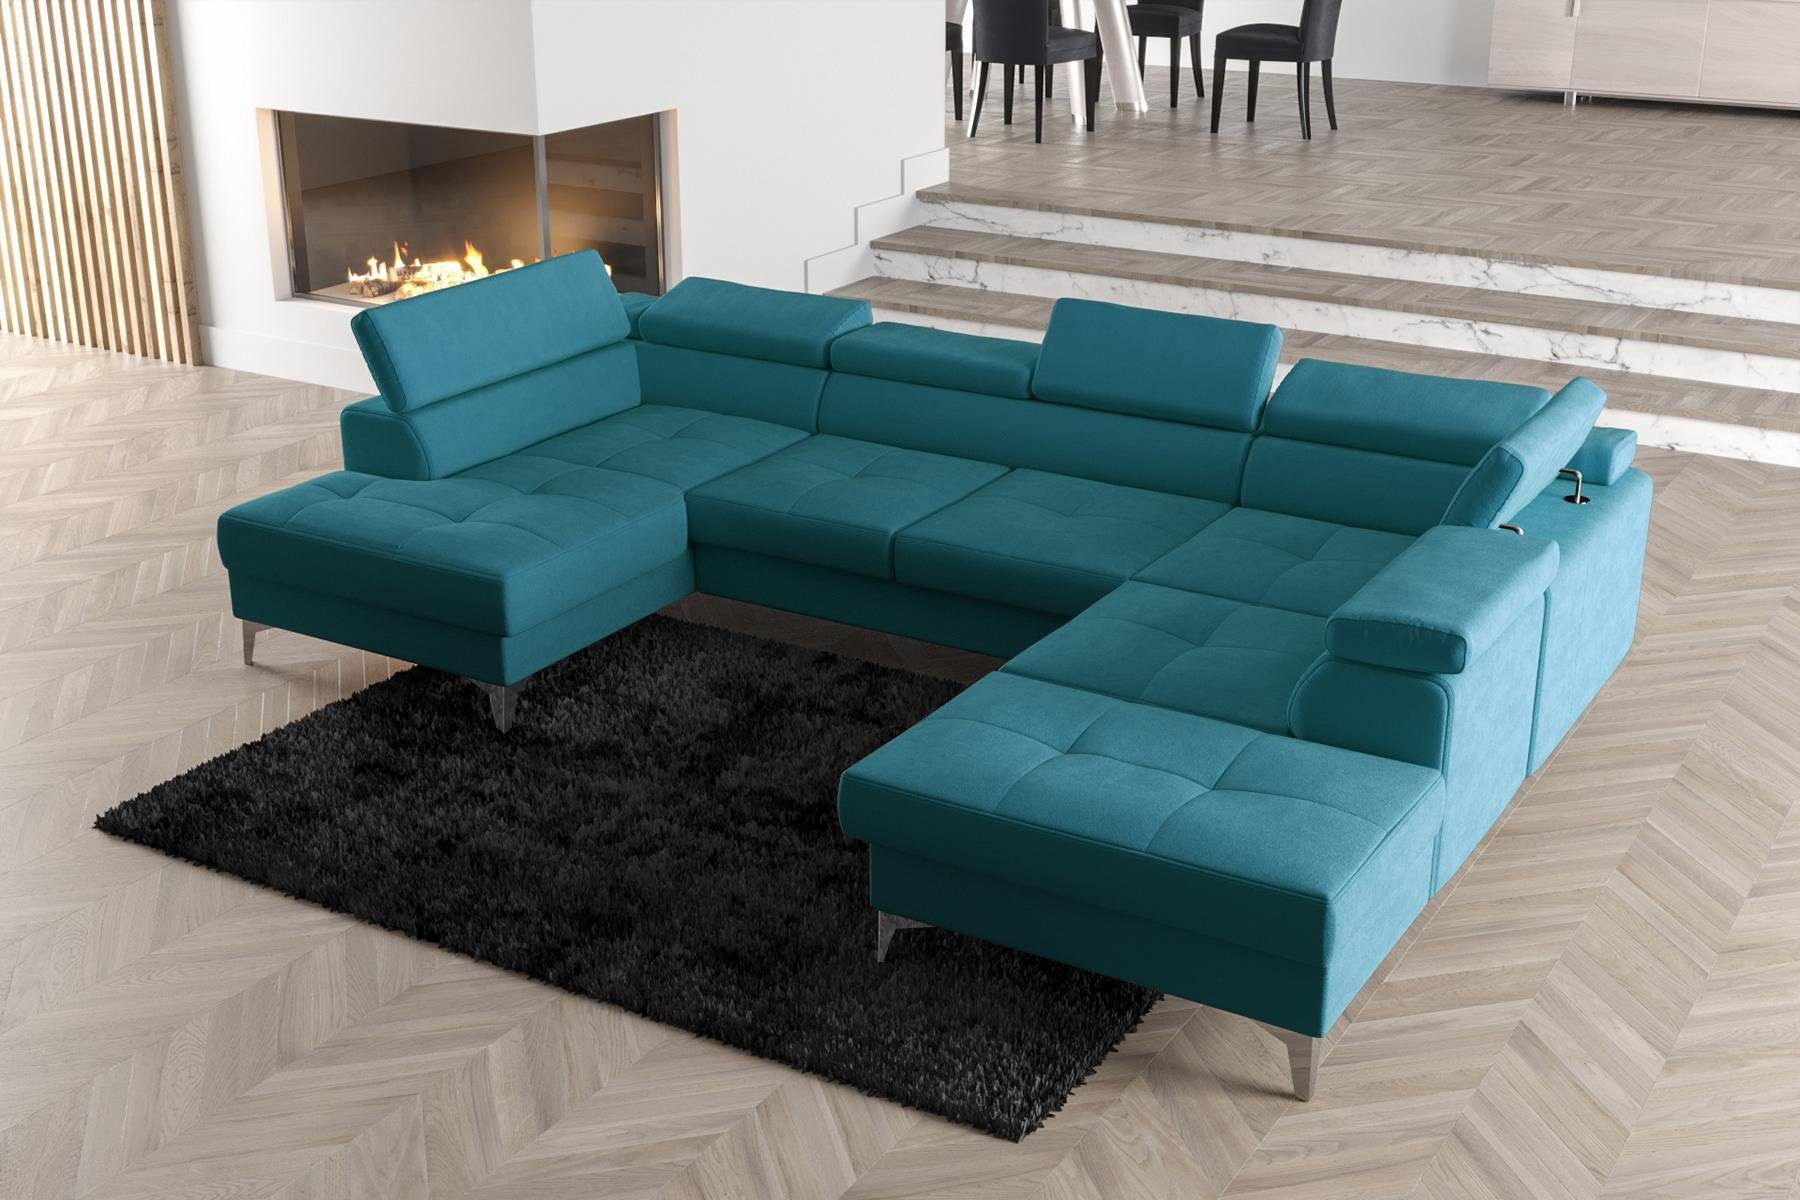 JVmoebel Ecksofa Modernes Design Polsterung Couch Wohnzimmer Ecksofa U-Form, Made in Europe Blau